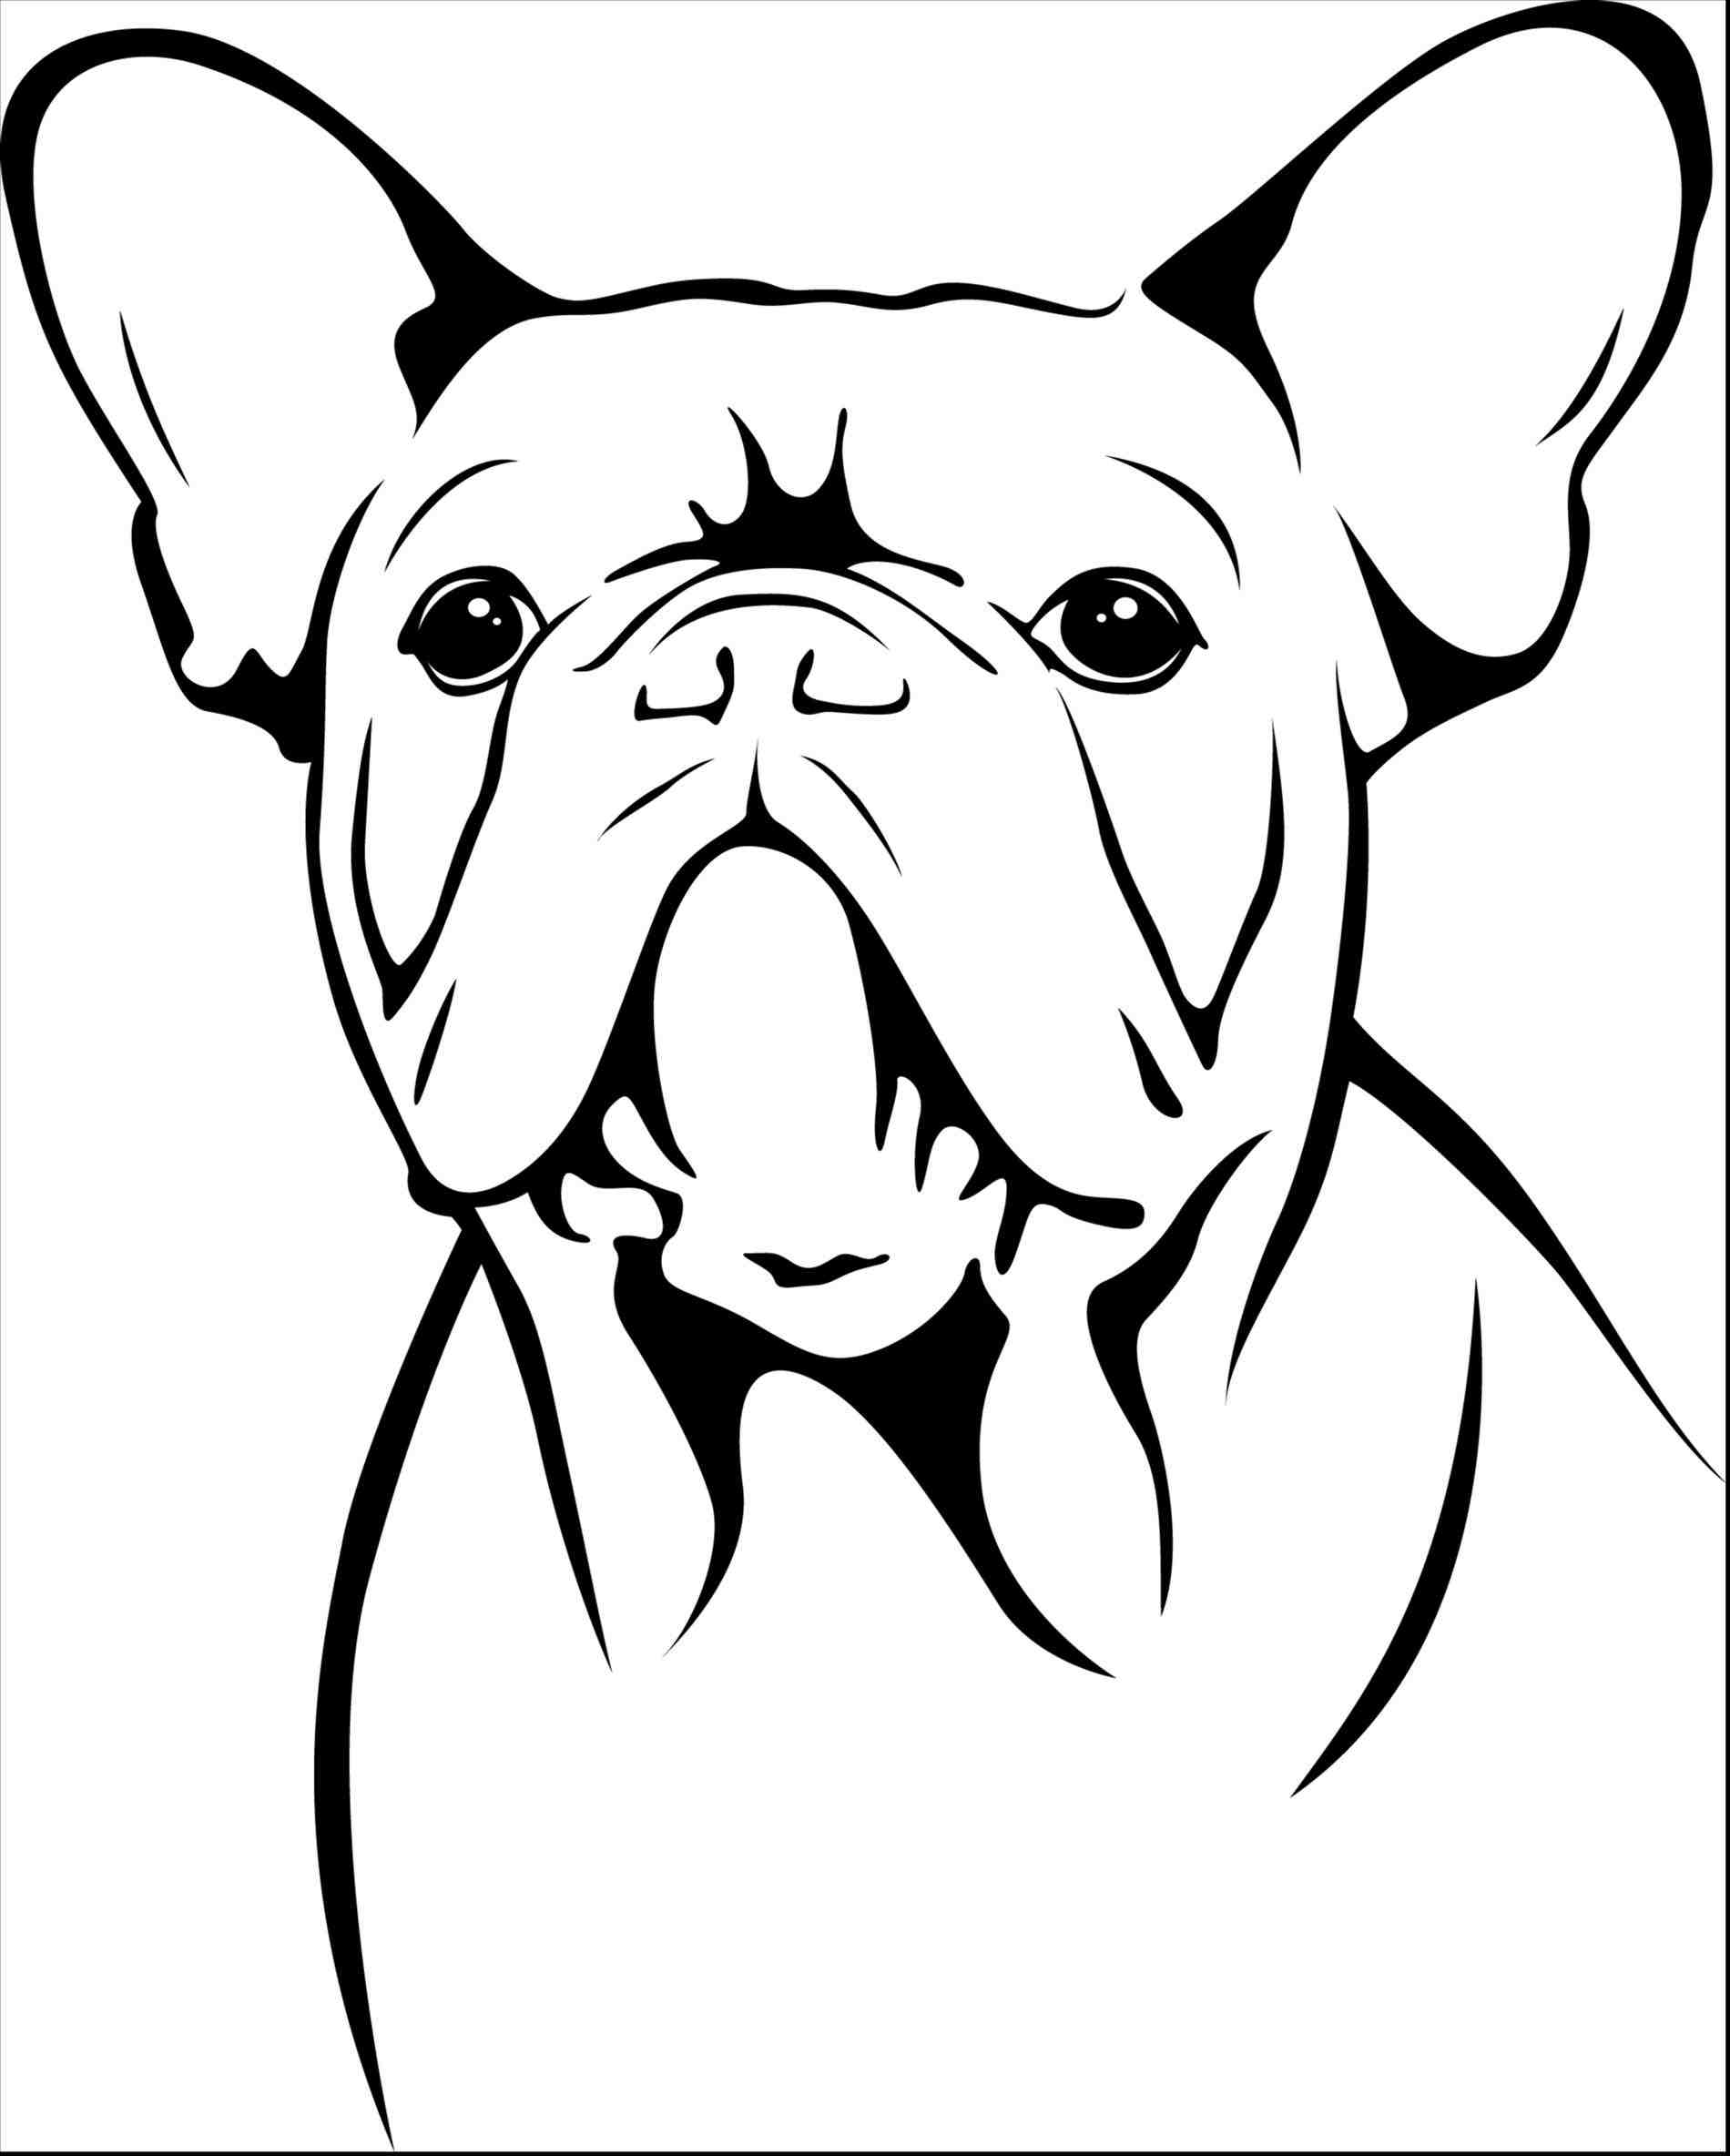 Bulldog Mascot Drawing At Getdrawings Free Download